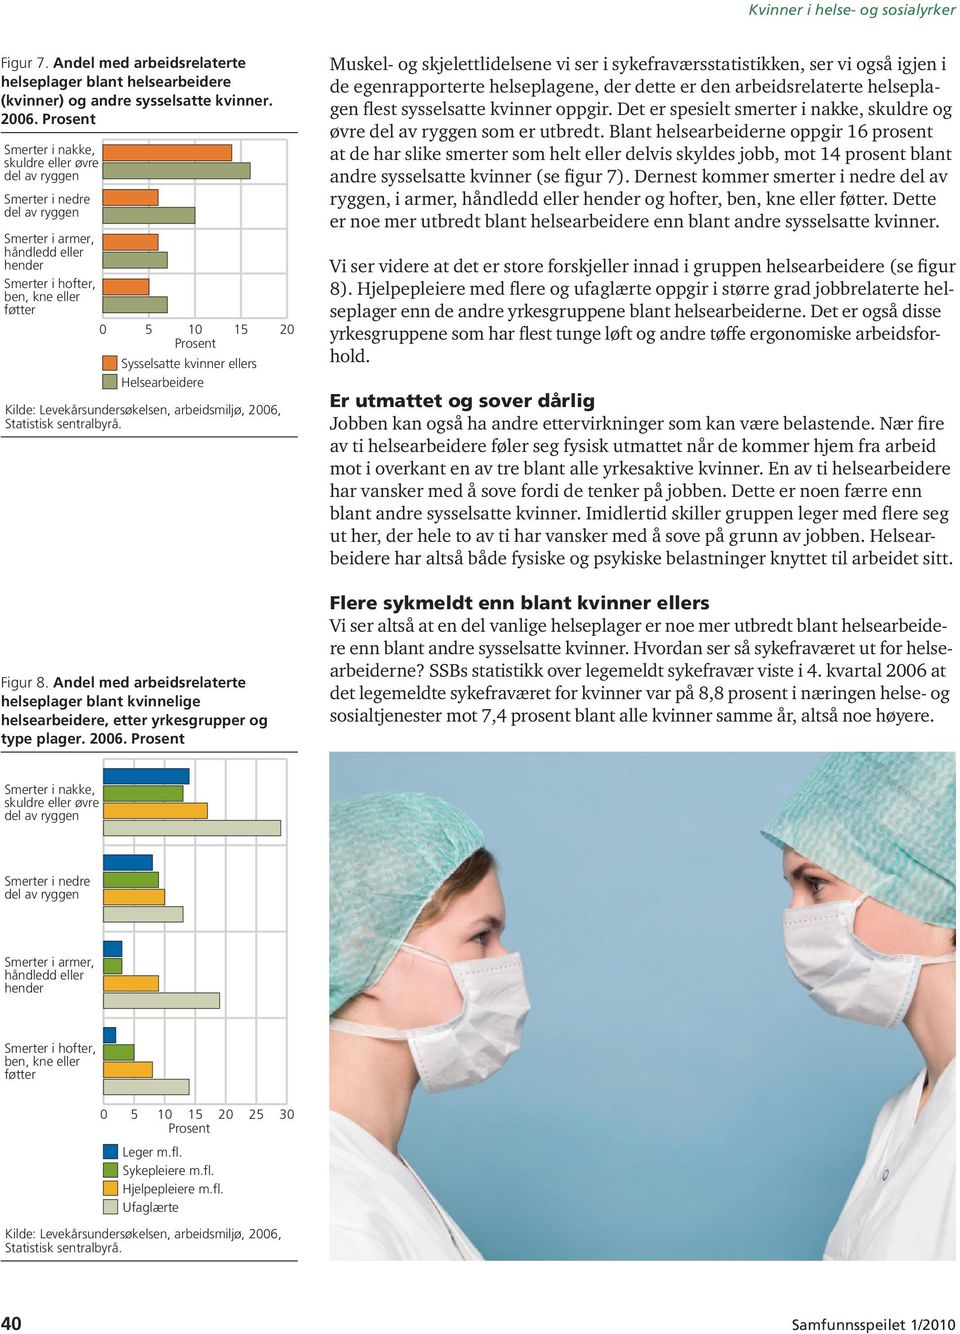 Figur 8. Andel med arbeidsrelaterte helseplager blant kvinnelige helsearbeidere, etter yrkesgrupper og type plager. 2006.